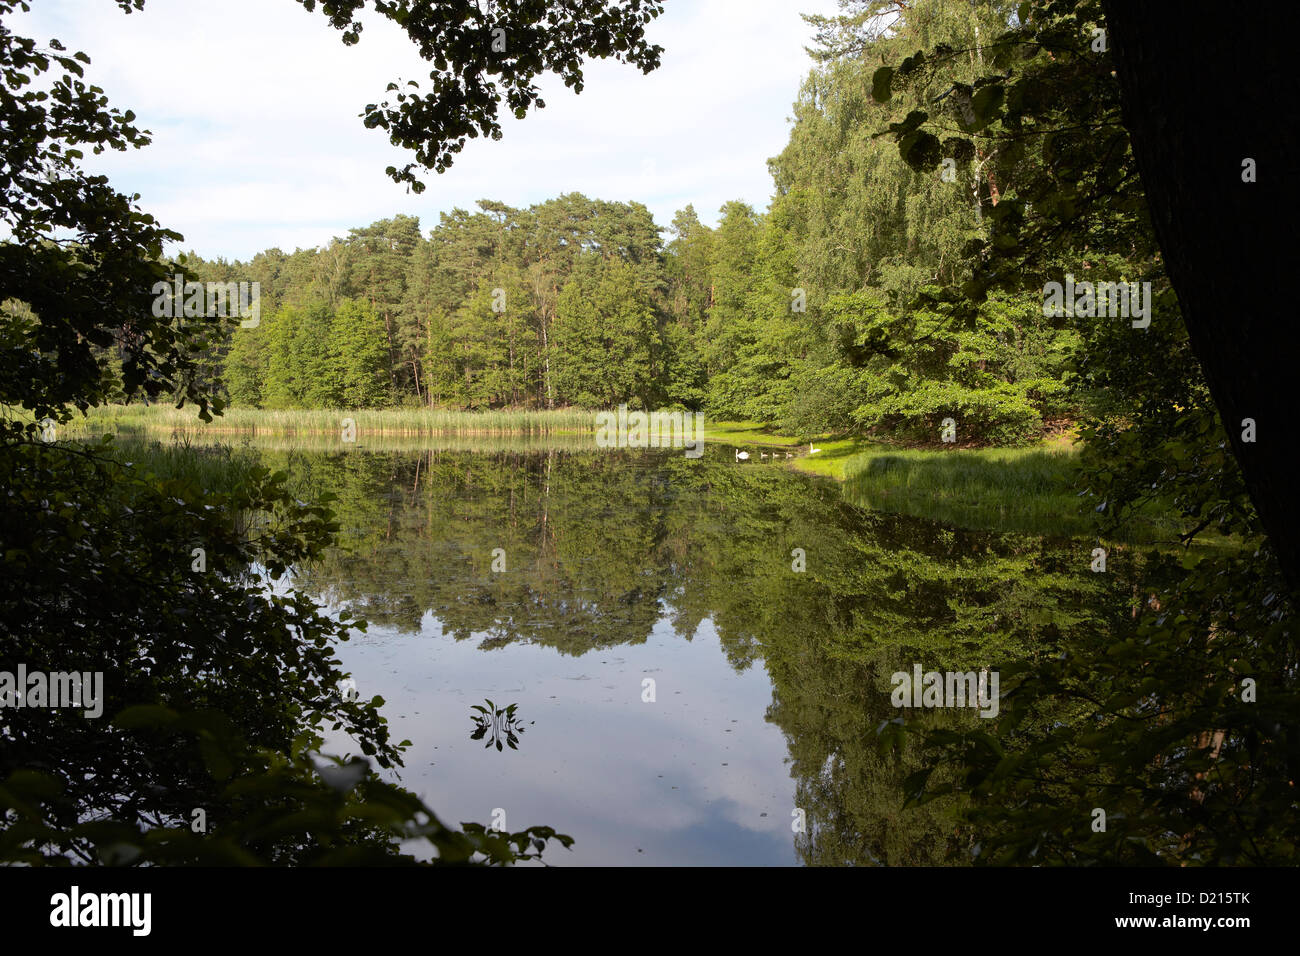 Reflet de l'arbre dans le lac, Vallée Schlaube Hammersee Nature park, Brandebourg, Allemagne Banque D'Images